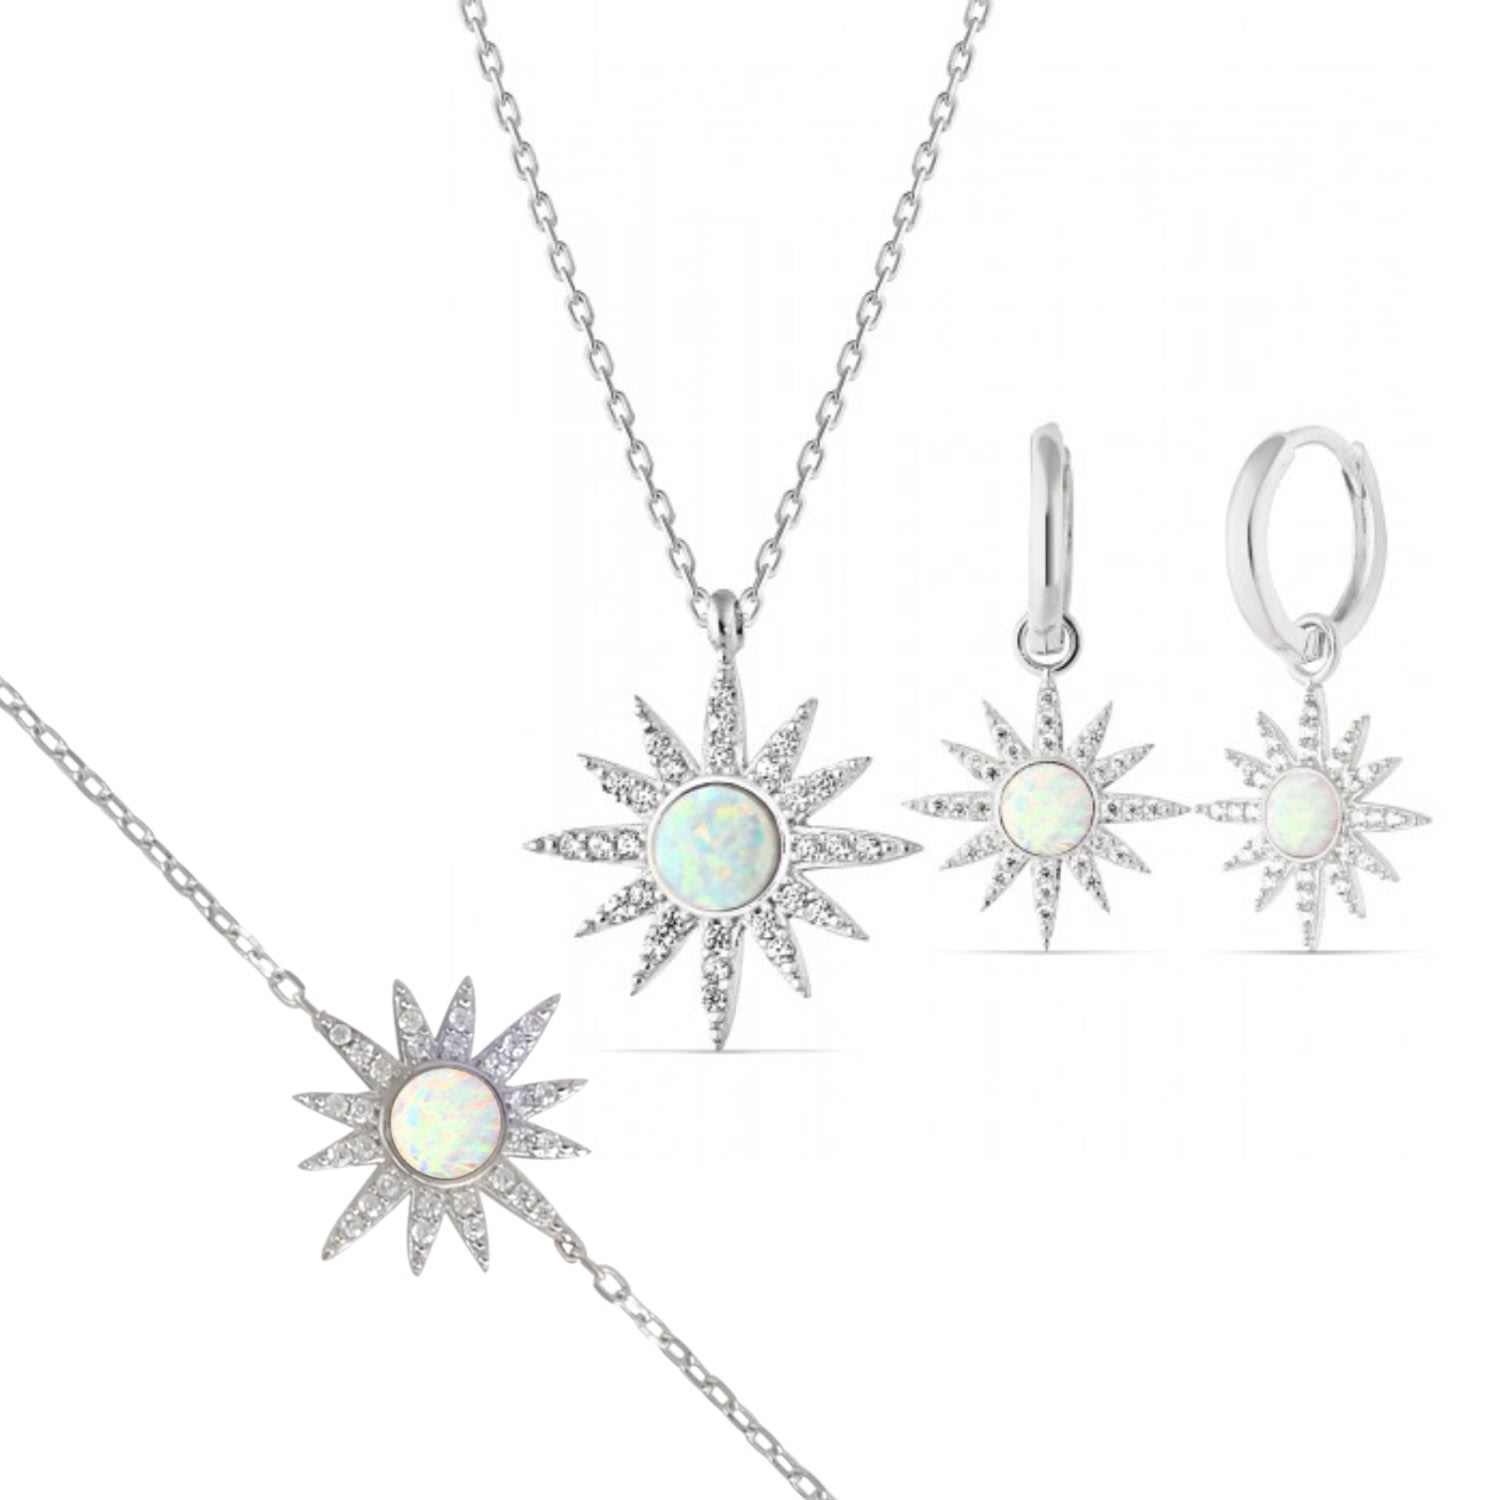 Spero London Women's White Opal Sun Sterling Silver Necklace Earring & Bracelet Set - Silver In Metallic